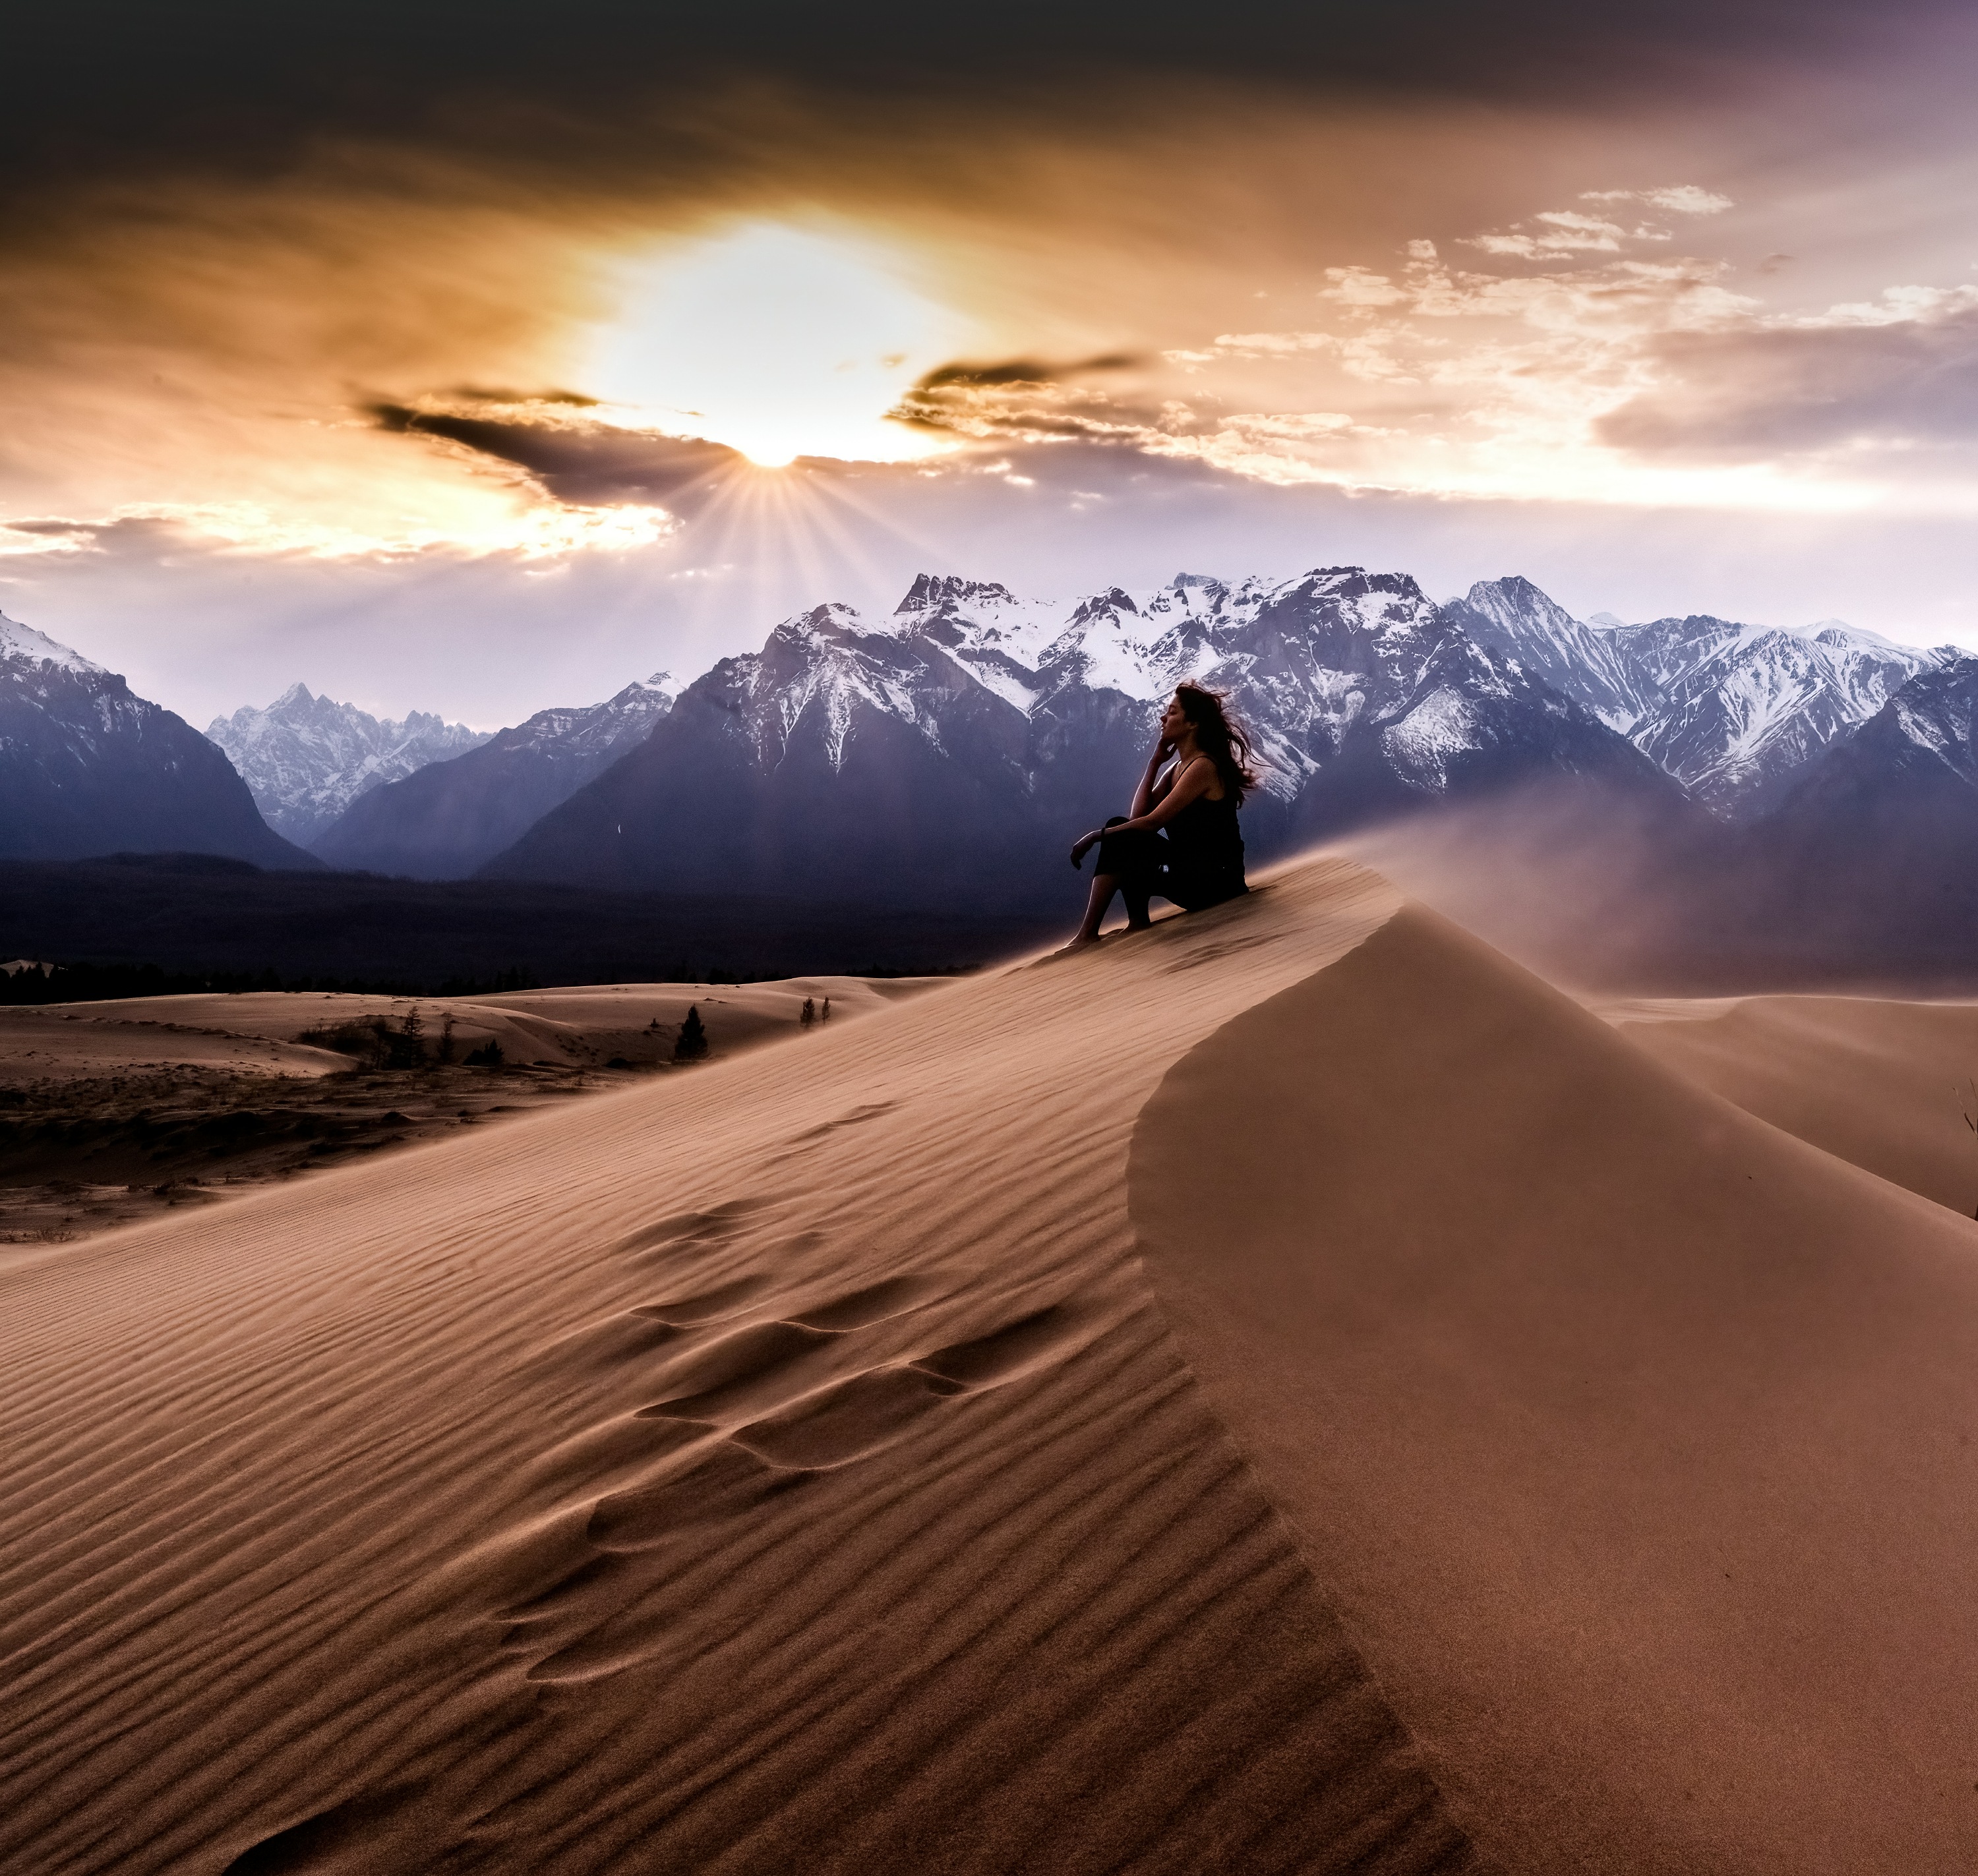 пейзаж, закат, дюна, пески, пустыня, девушка, landscape, sunset, world traveler, desert, Karasev Pavel